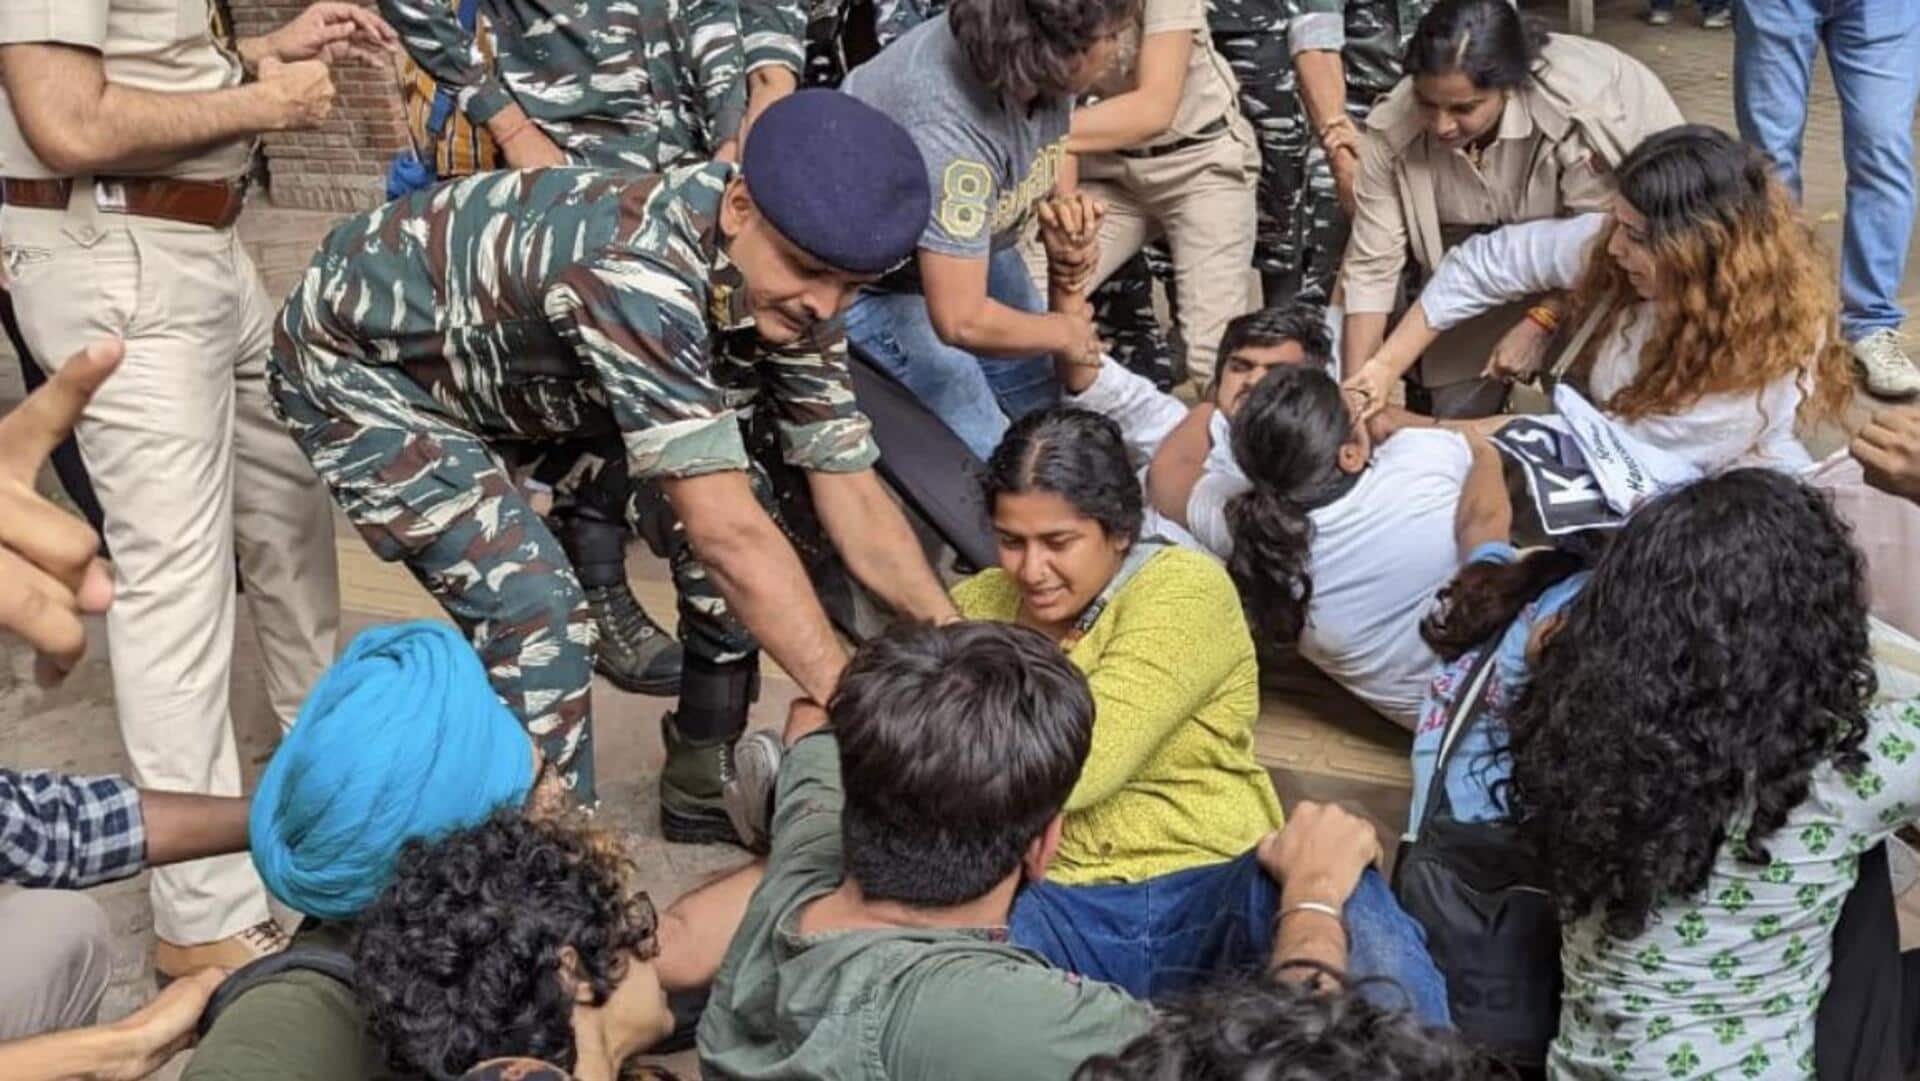 दिल्ली: छात्रों को पुलिस ने हिरासत में लिया, पहलवानों के समर्थन में निकाल रहे थे मार्च 